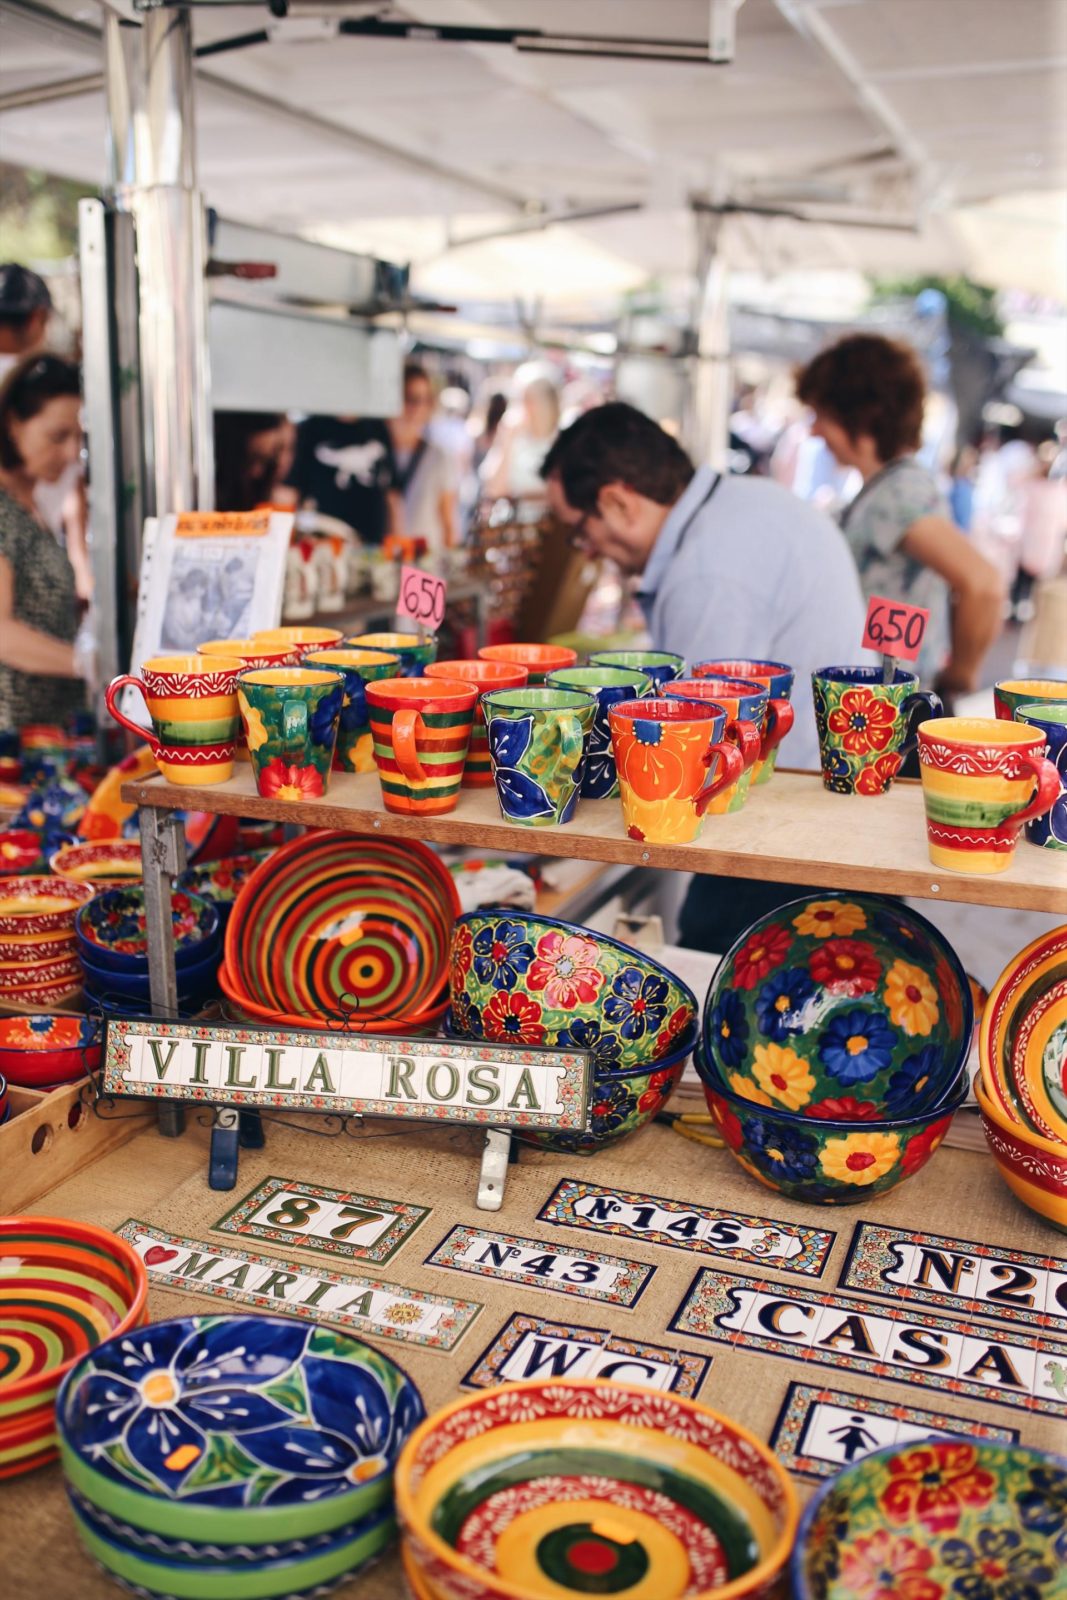 Die schönsten Wochenmärkte auf Mallorca Teil 2 #Mallorca #MallorcamitKindern #Märkteaufmallorca #Fincallorca #Reisenmitkindern #Malle #Mallorcatips | Pinspiration.de